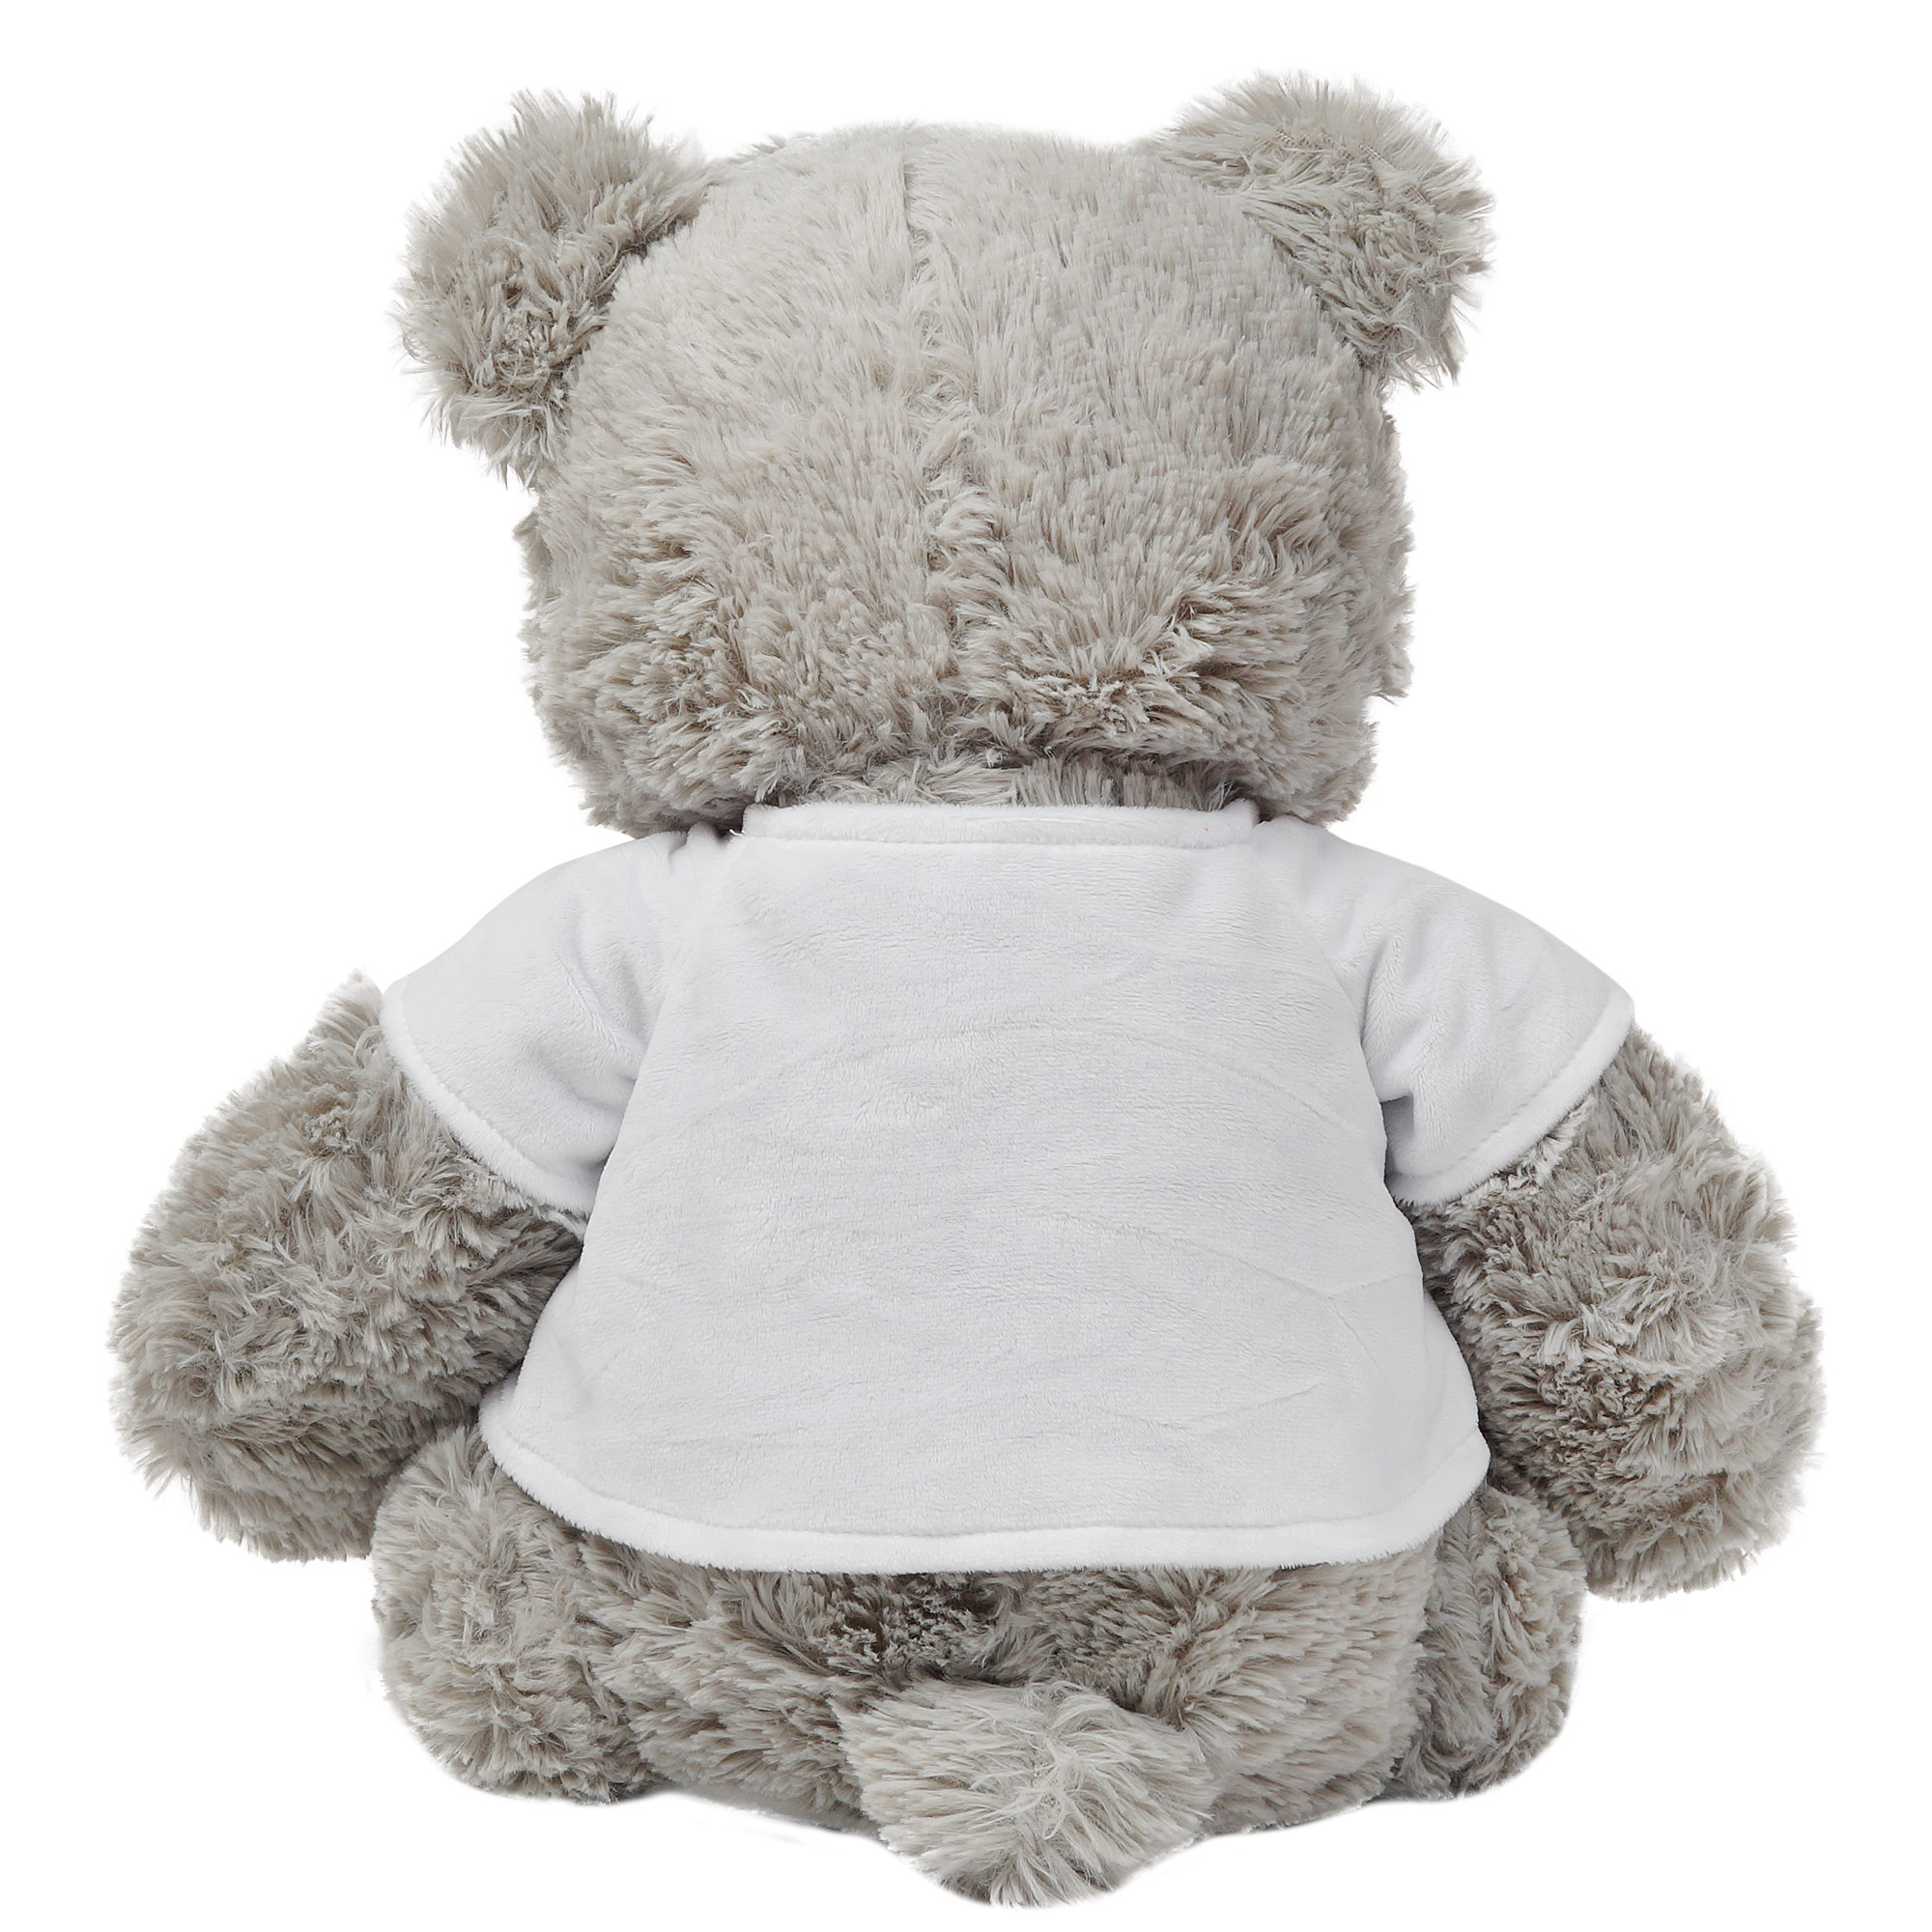 Мягкая игрушка Медведь серый  в  футболке 40см